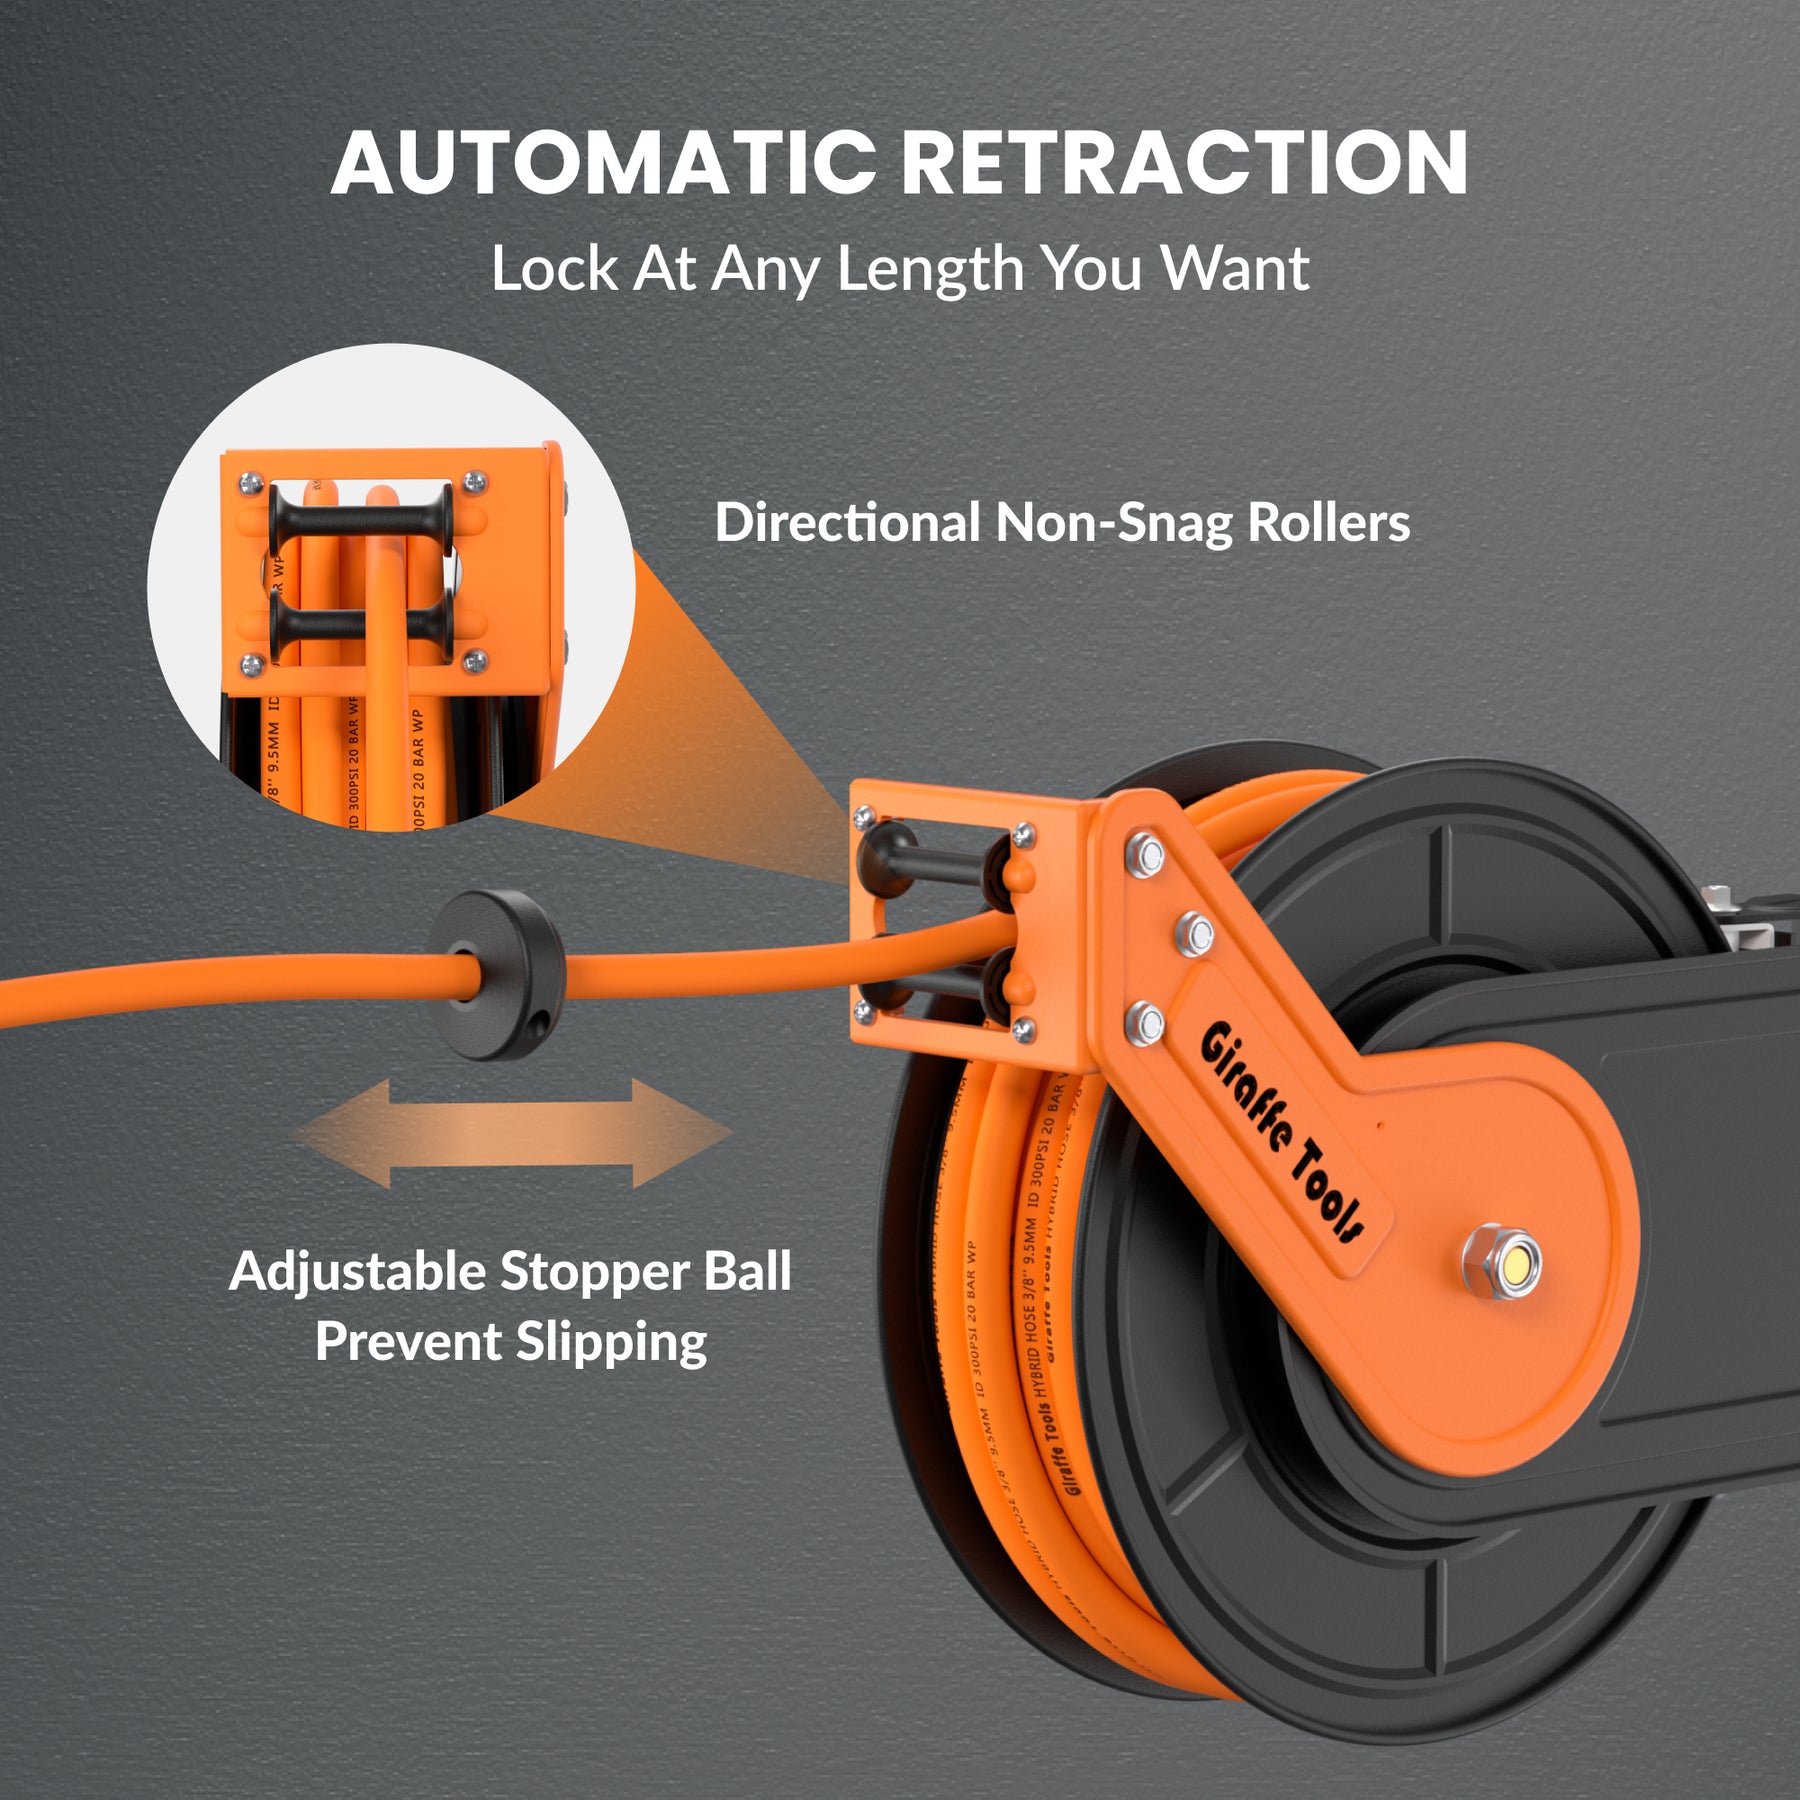 Retractable Air Hose Reel-Alloy Steel Reel-3/8in